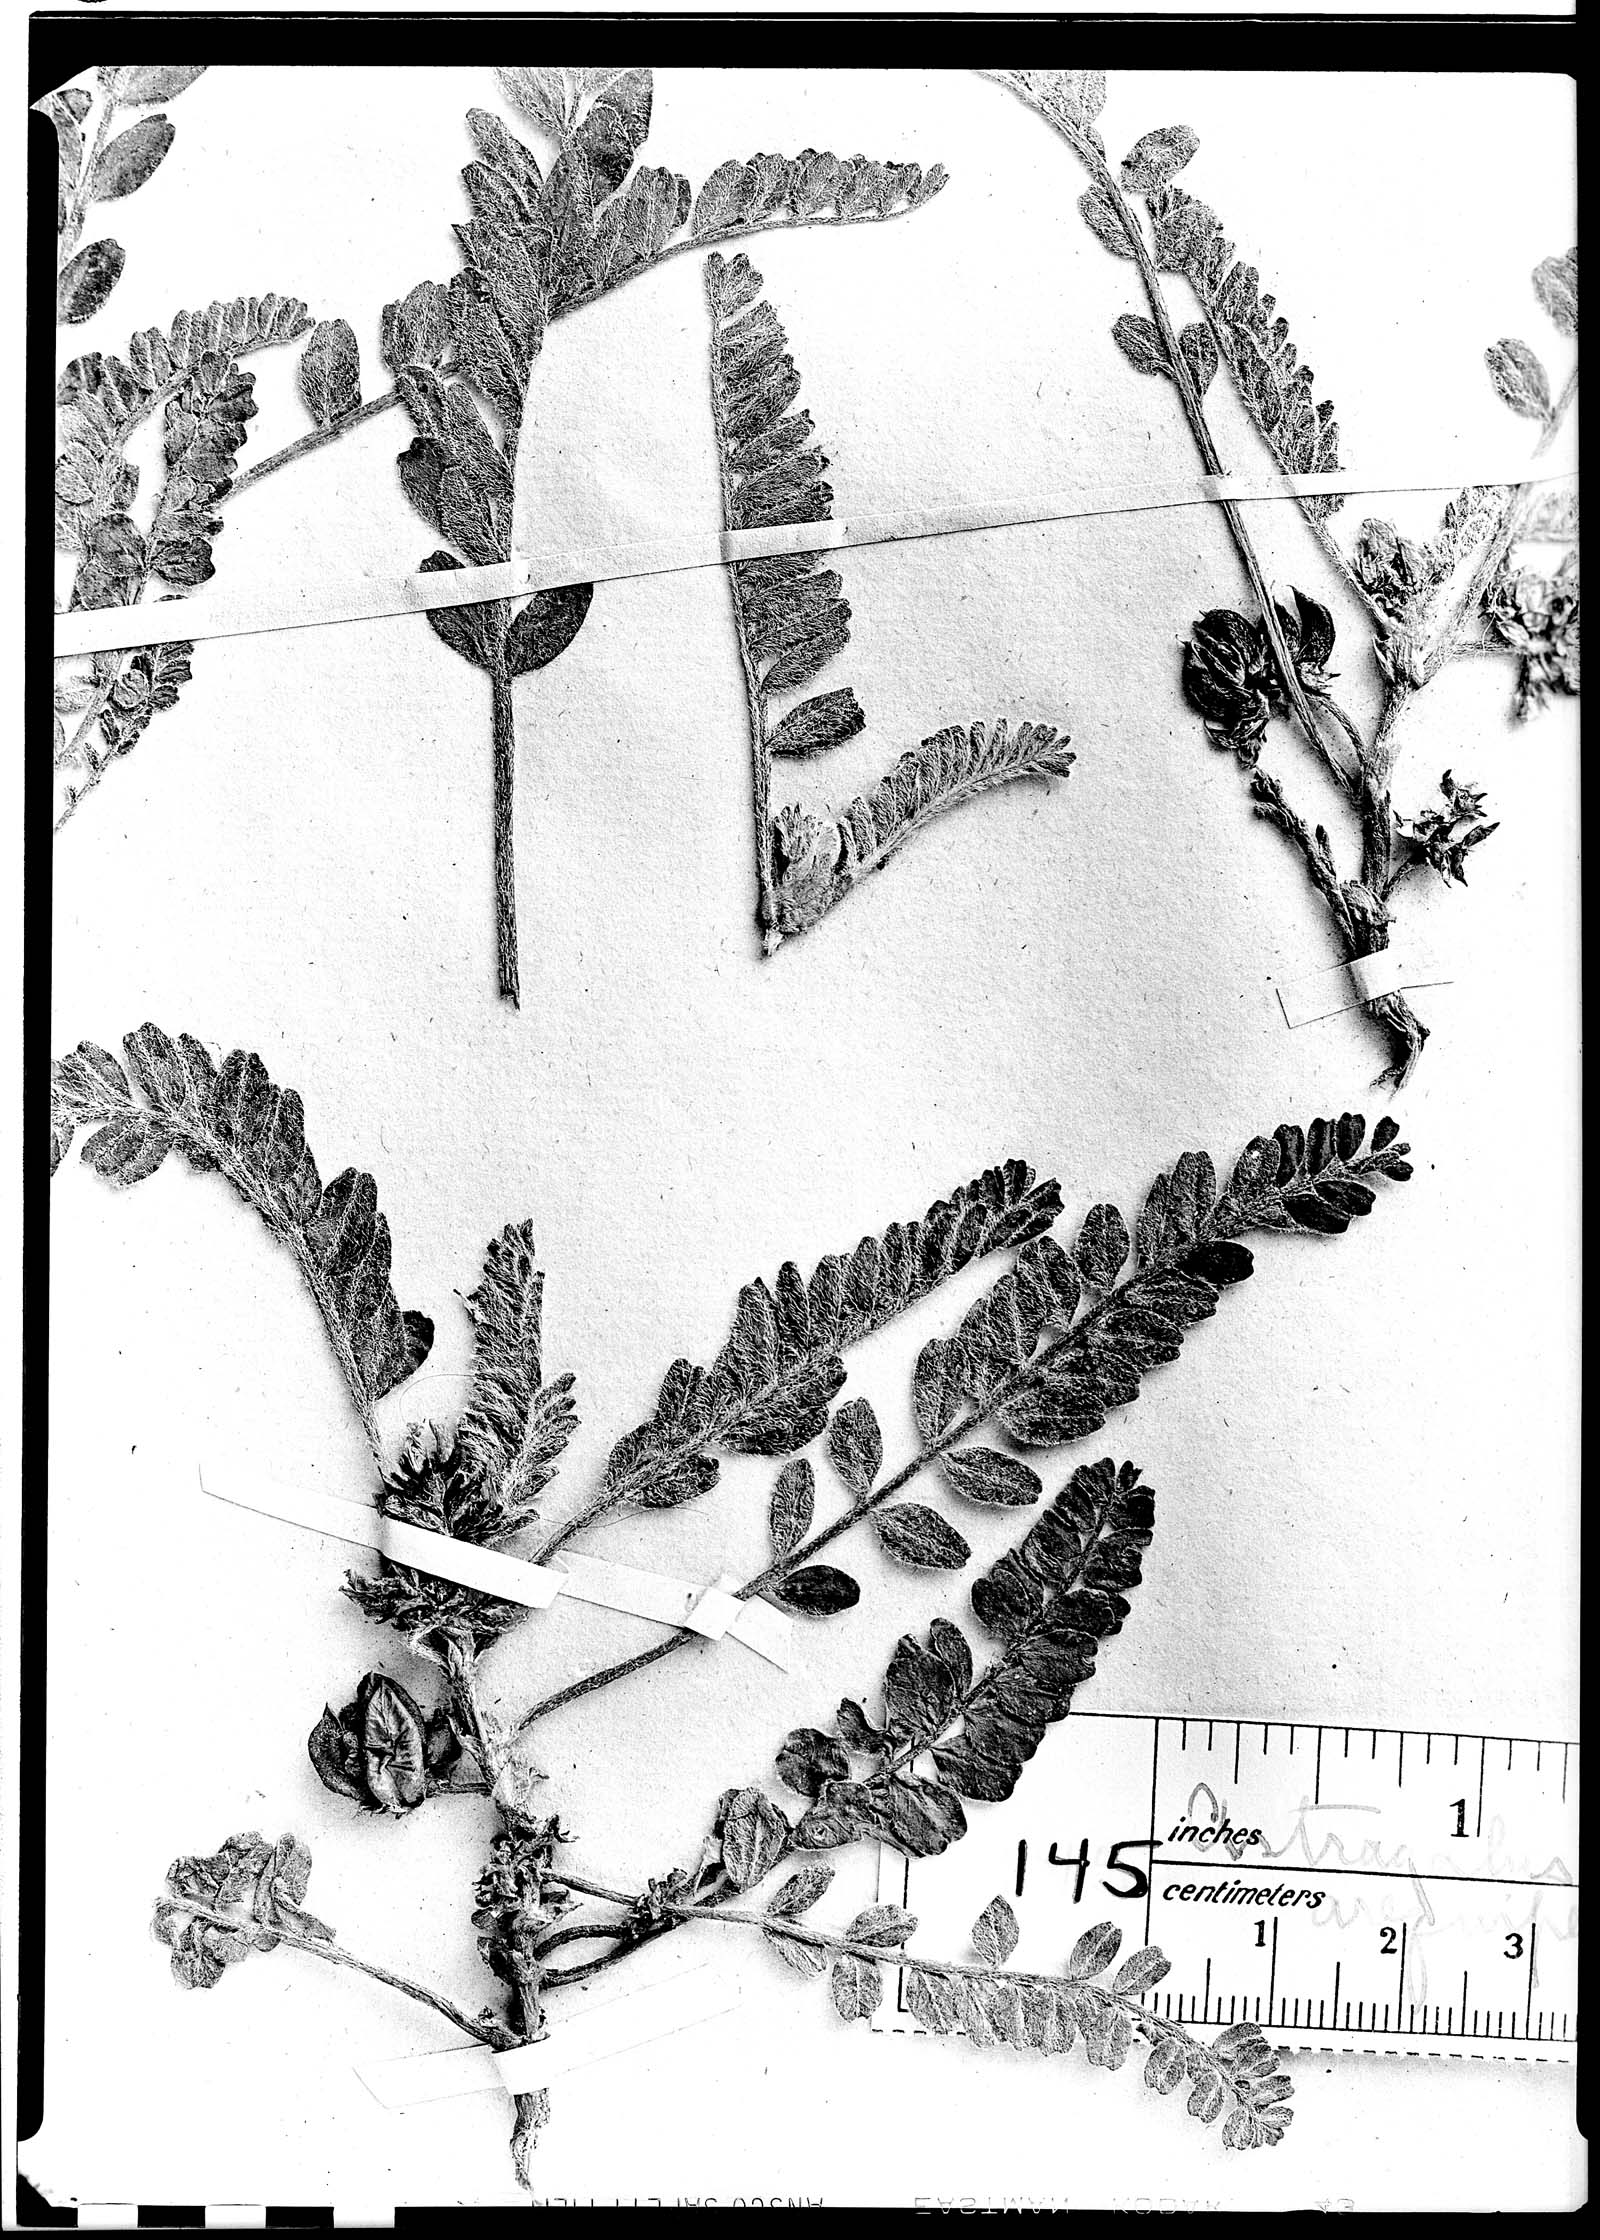 Astragalus arequipensis image